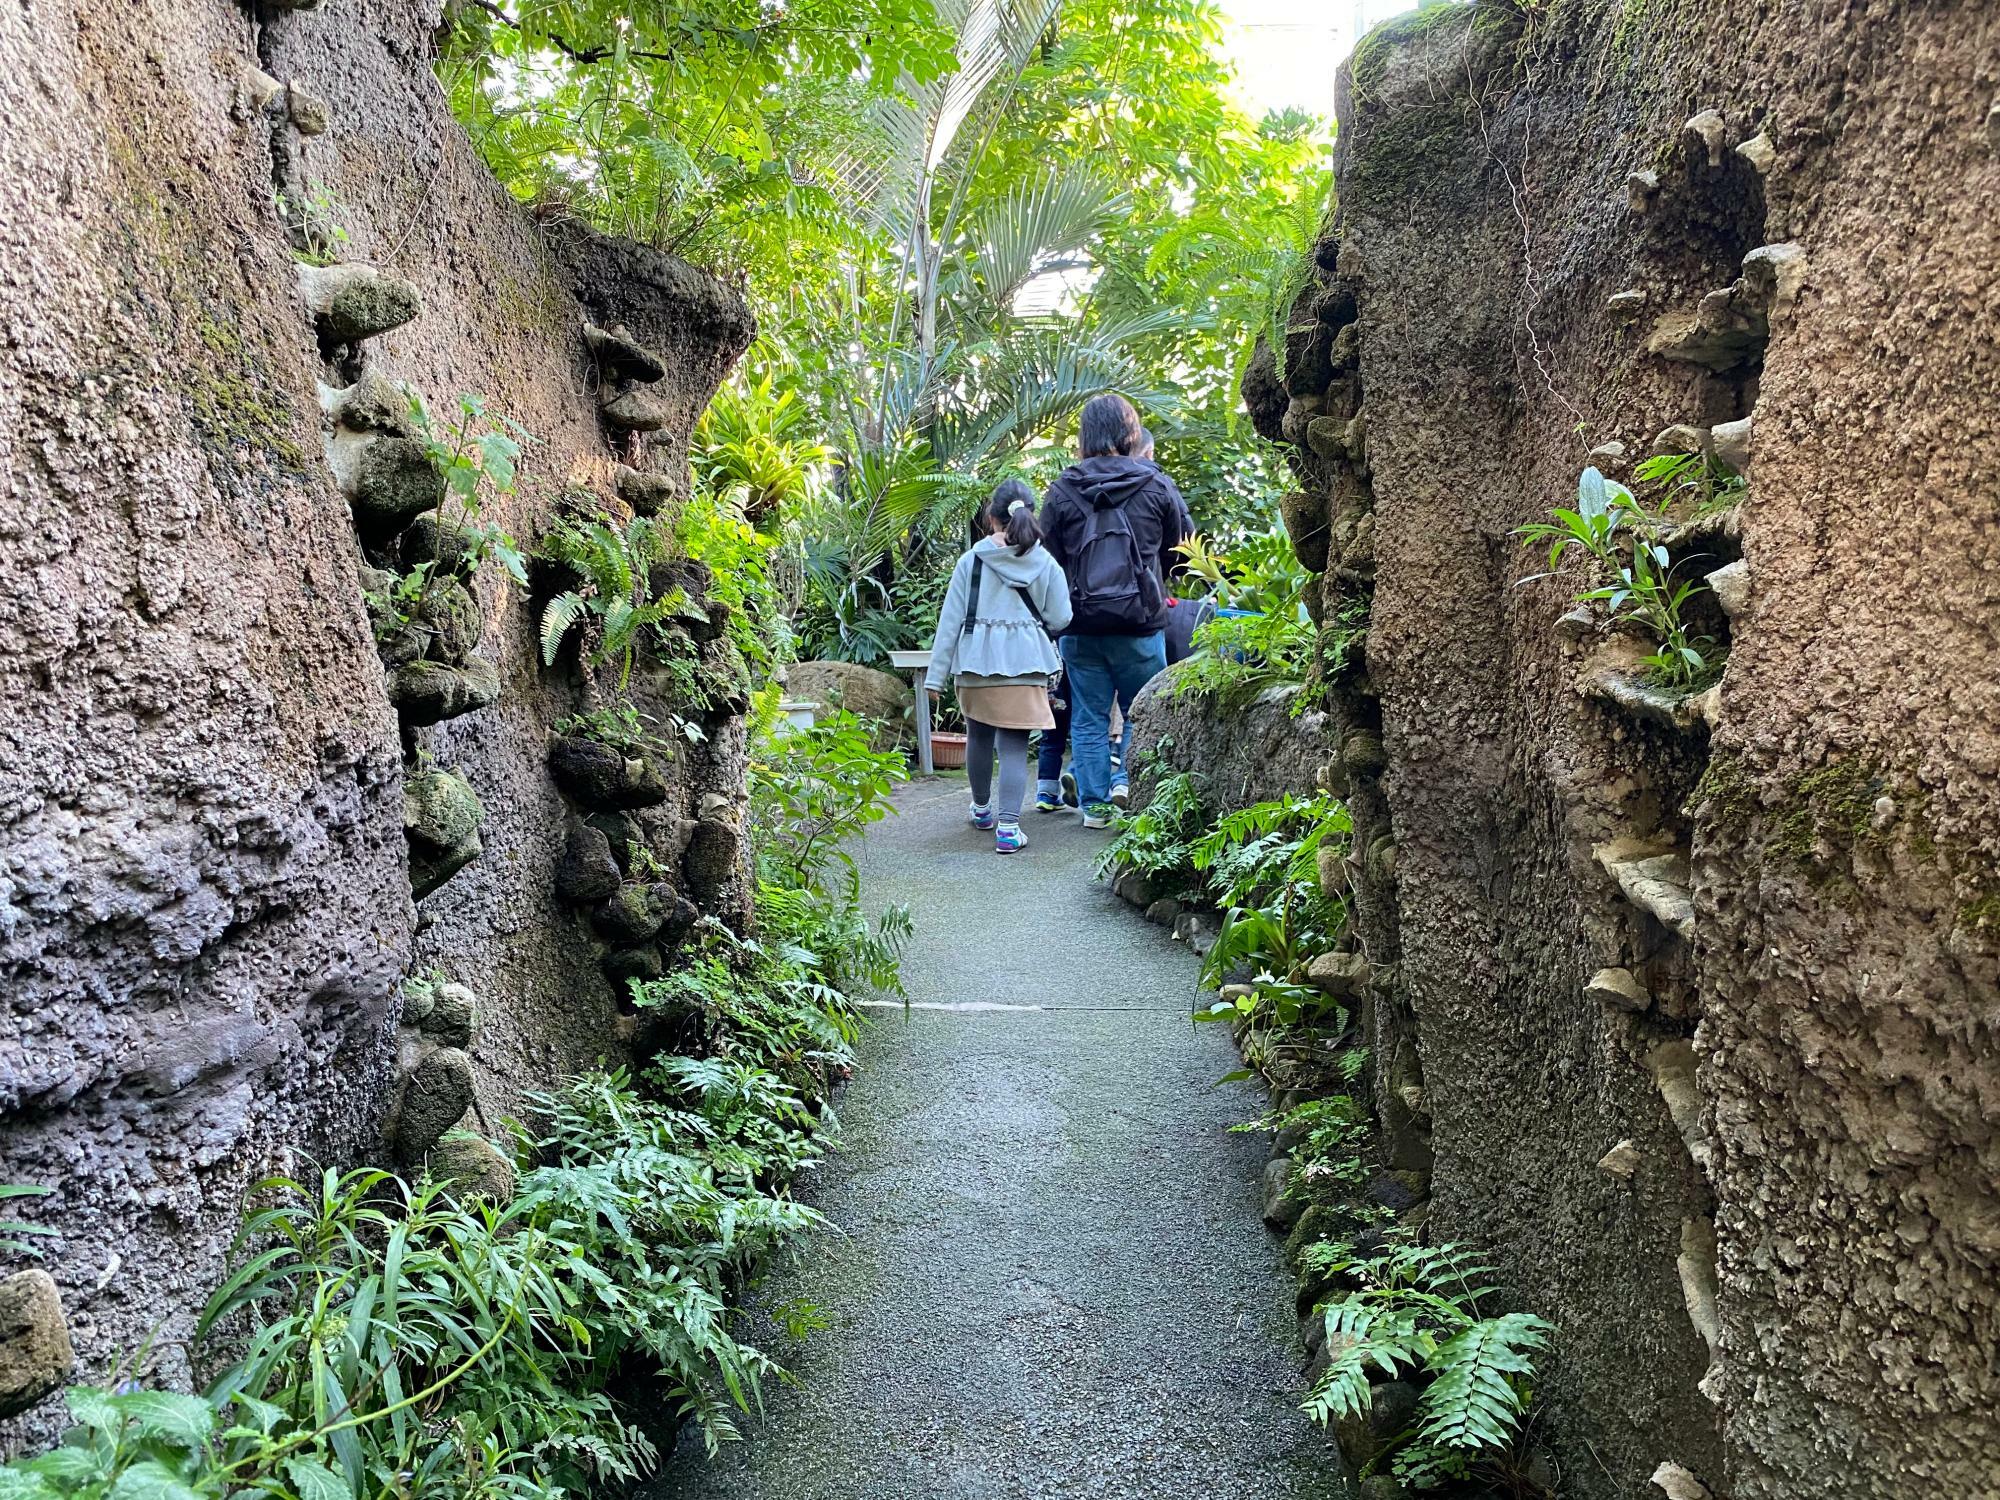 「元渕江公園」内にある「足立区生物園」では、動物・植物などの多くの生物と触れ合うことができます